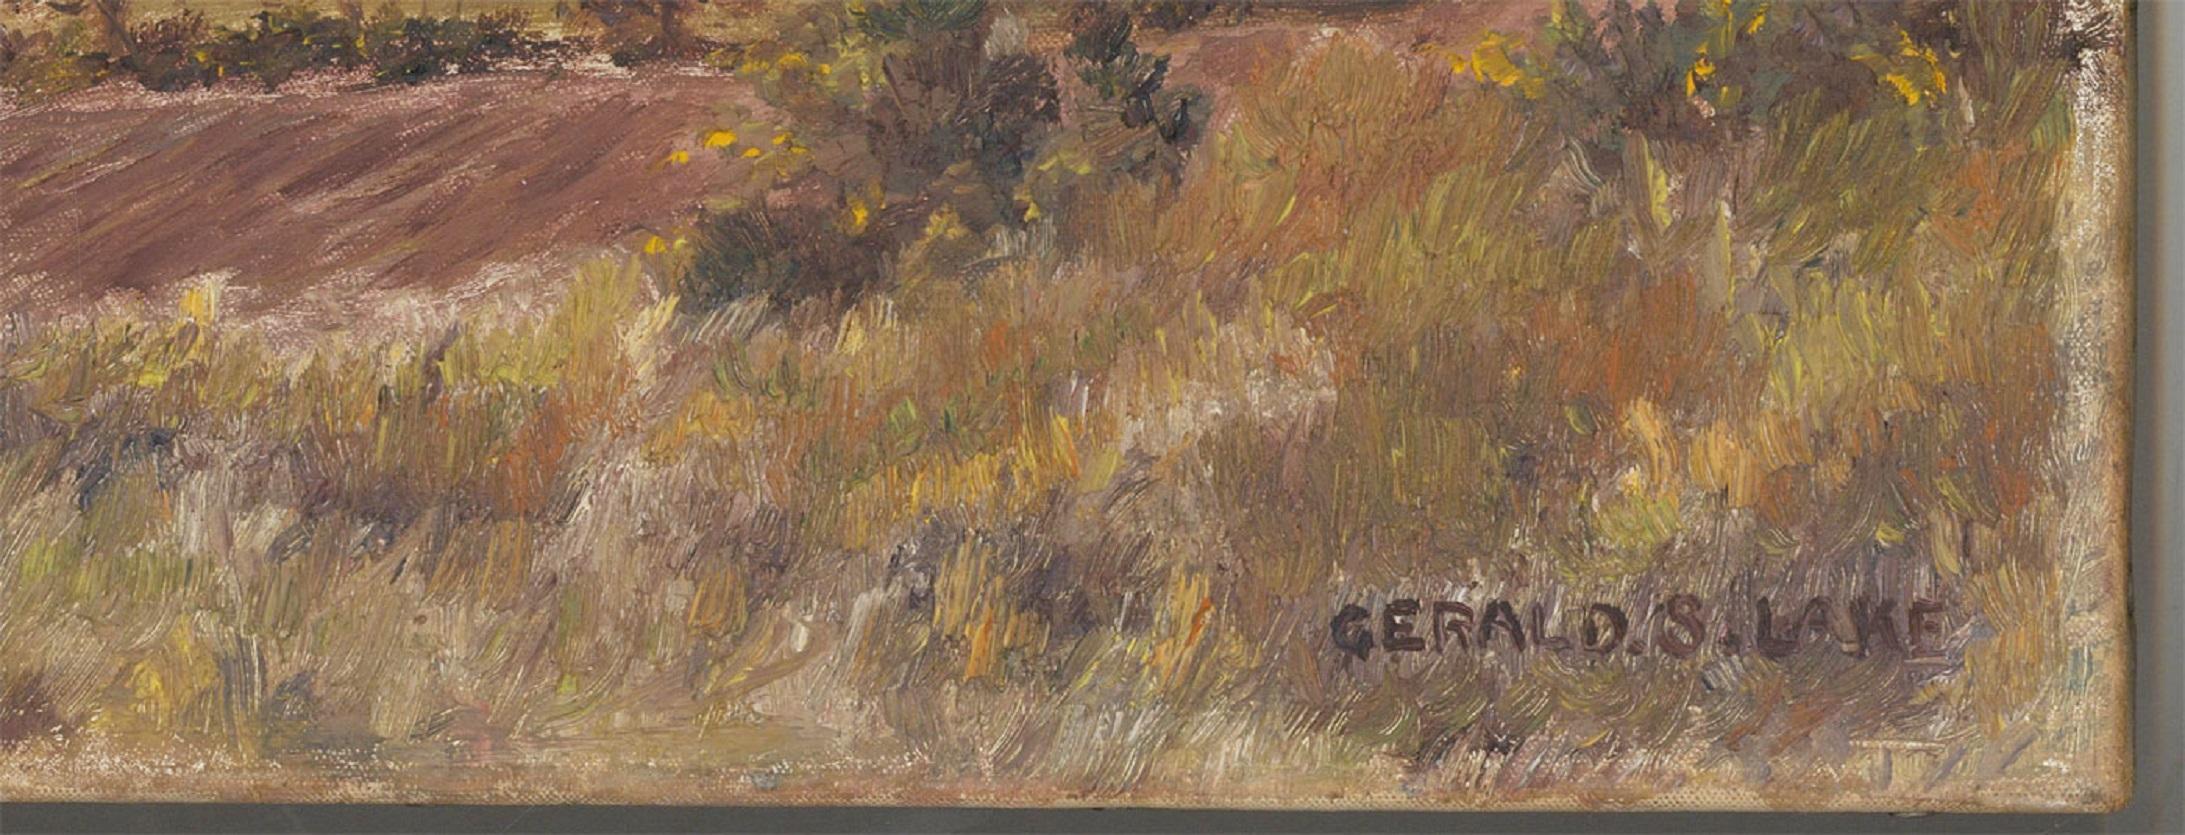 Une impressionnante peinture à l'huile de Gerald S. Lake représentant une scène de paysage agricole. L'utilisation de tons sourds et de coups de pinceau gestuels donne au feuillage une qualité texturée et organique.  Signé. Sur toile sur châssis.
